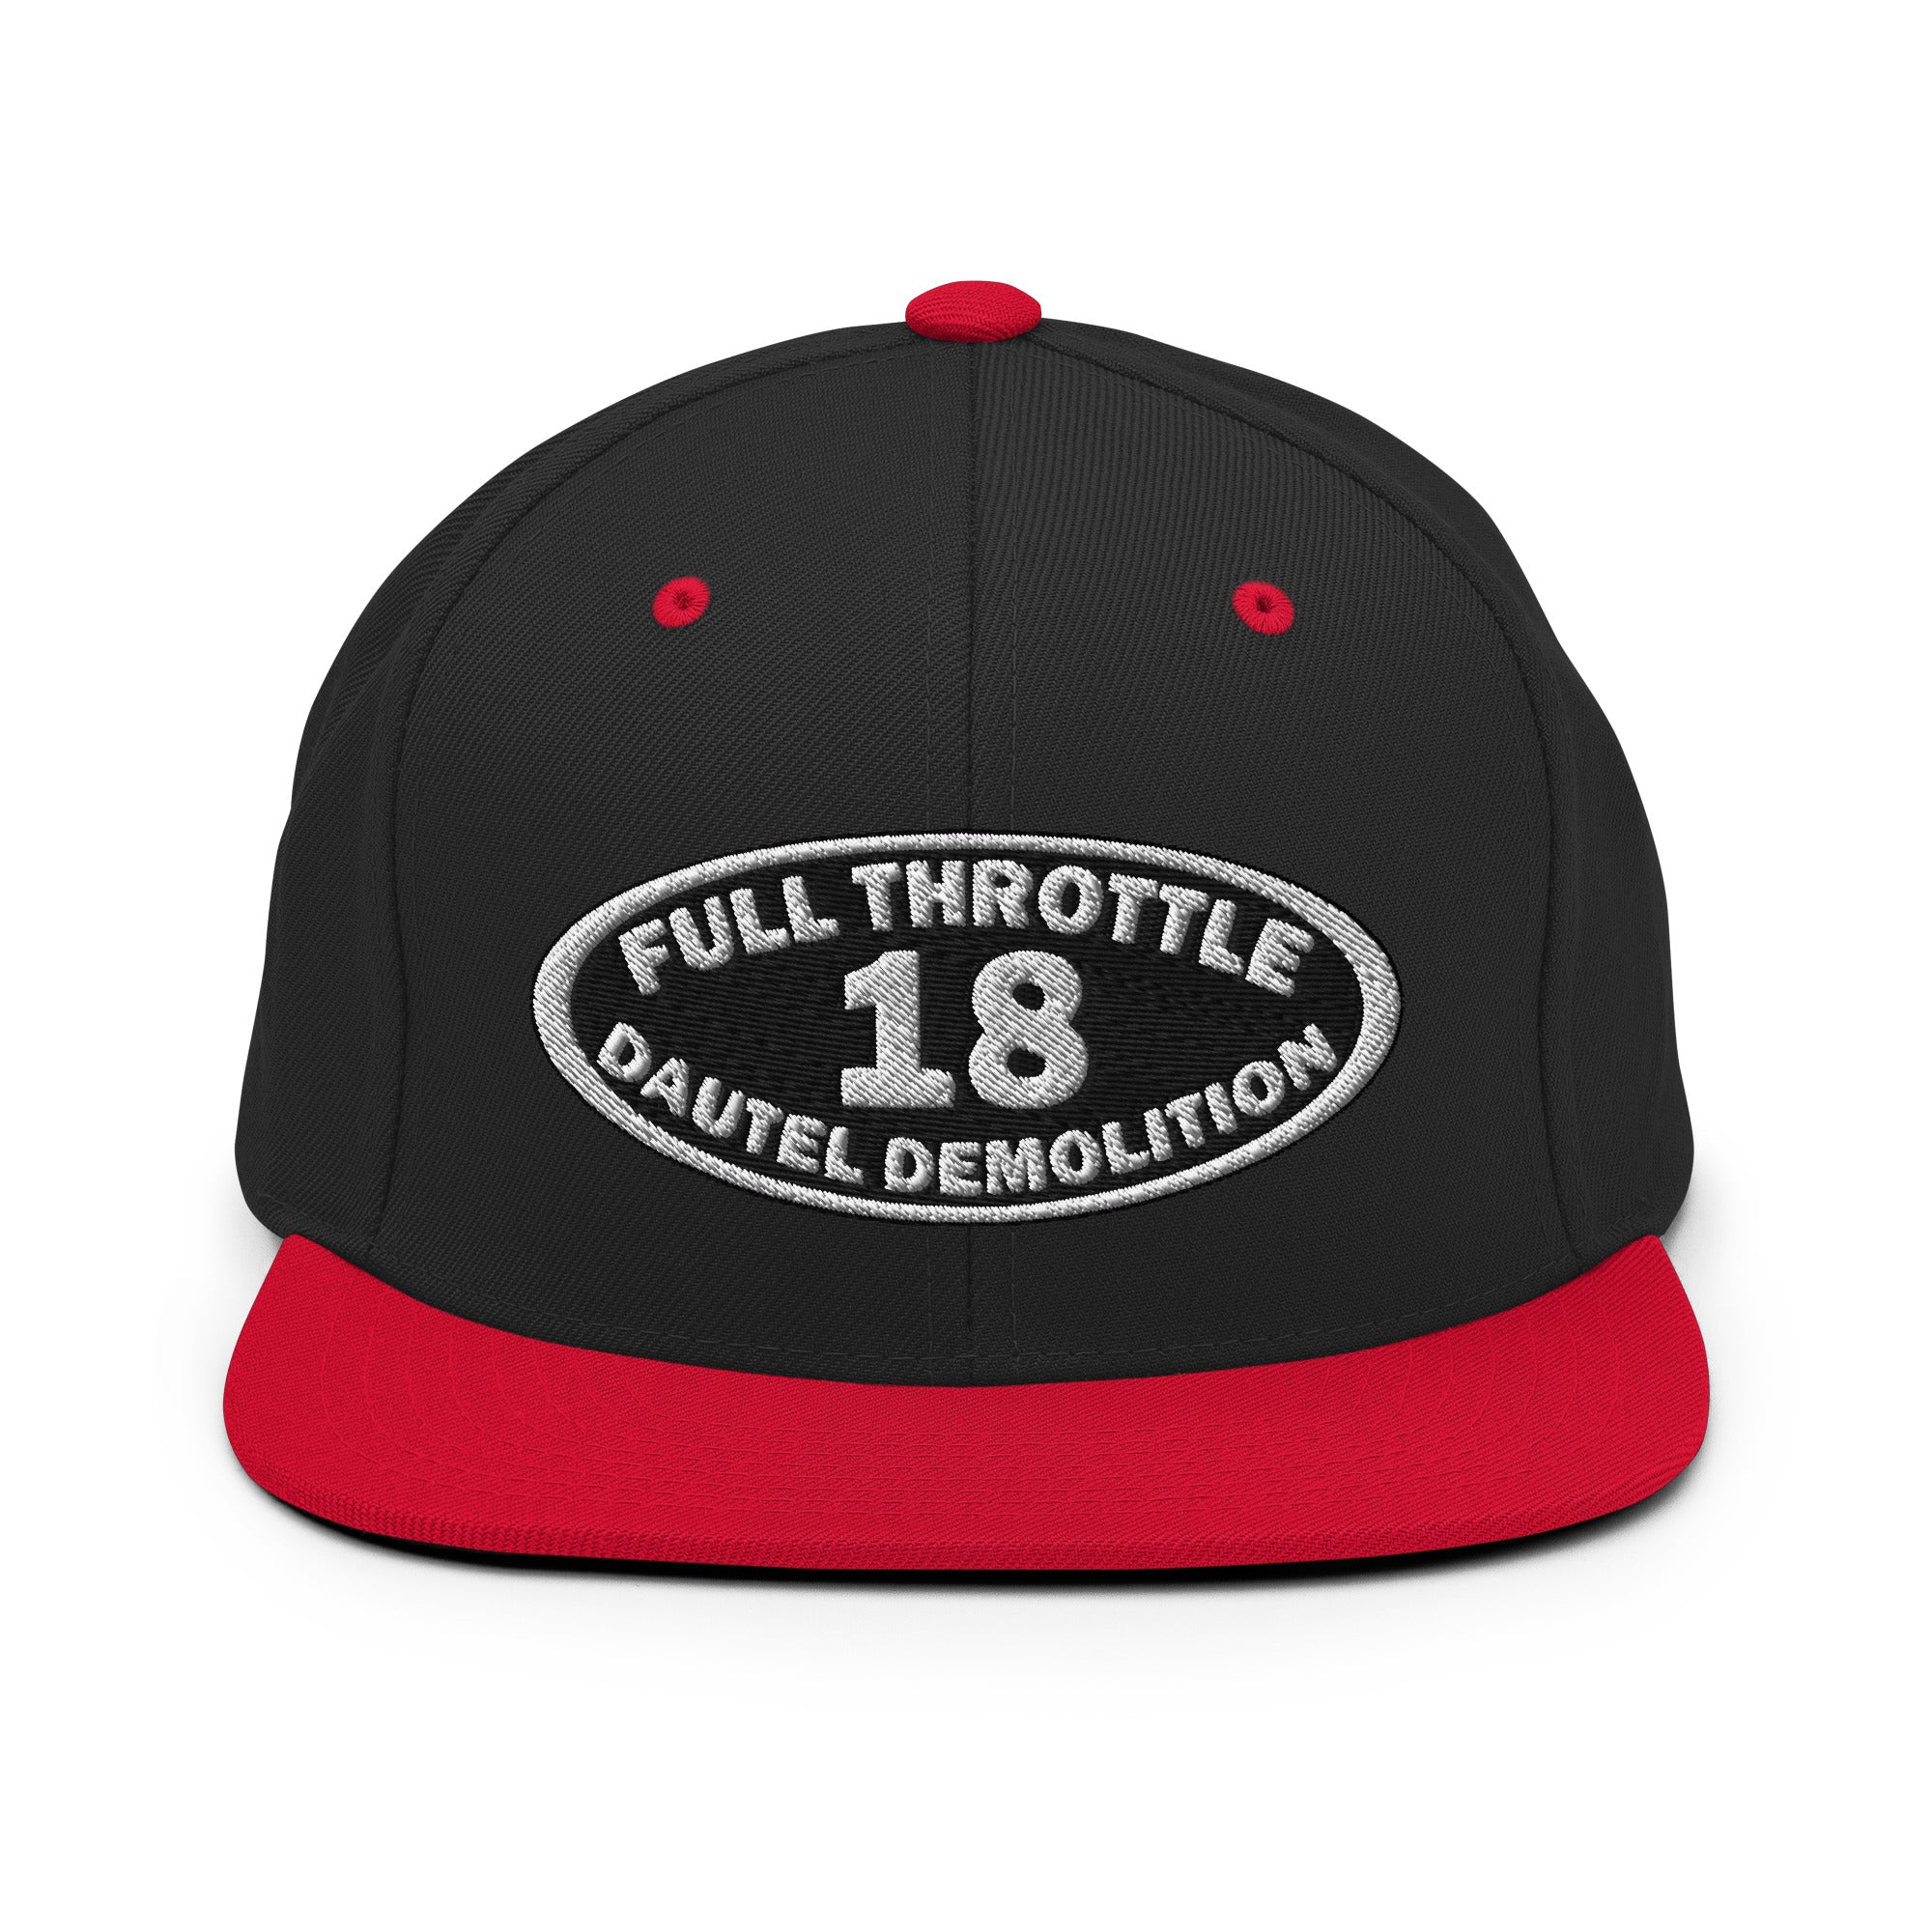 Full Throttle Dautel Oval Snapback Hat